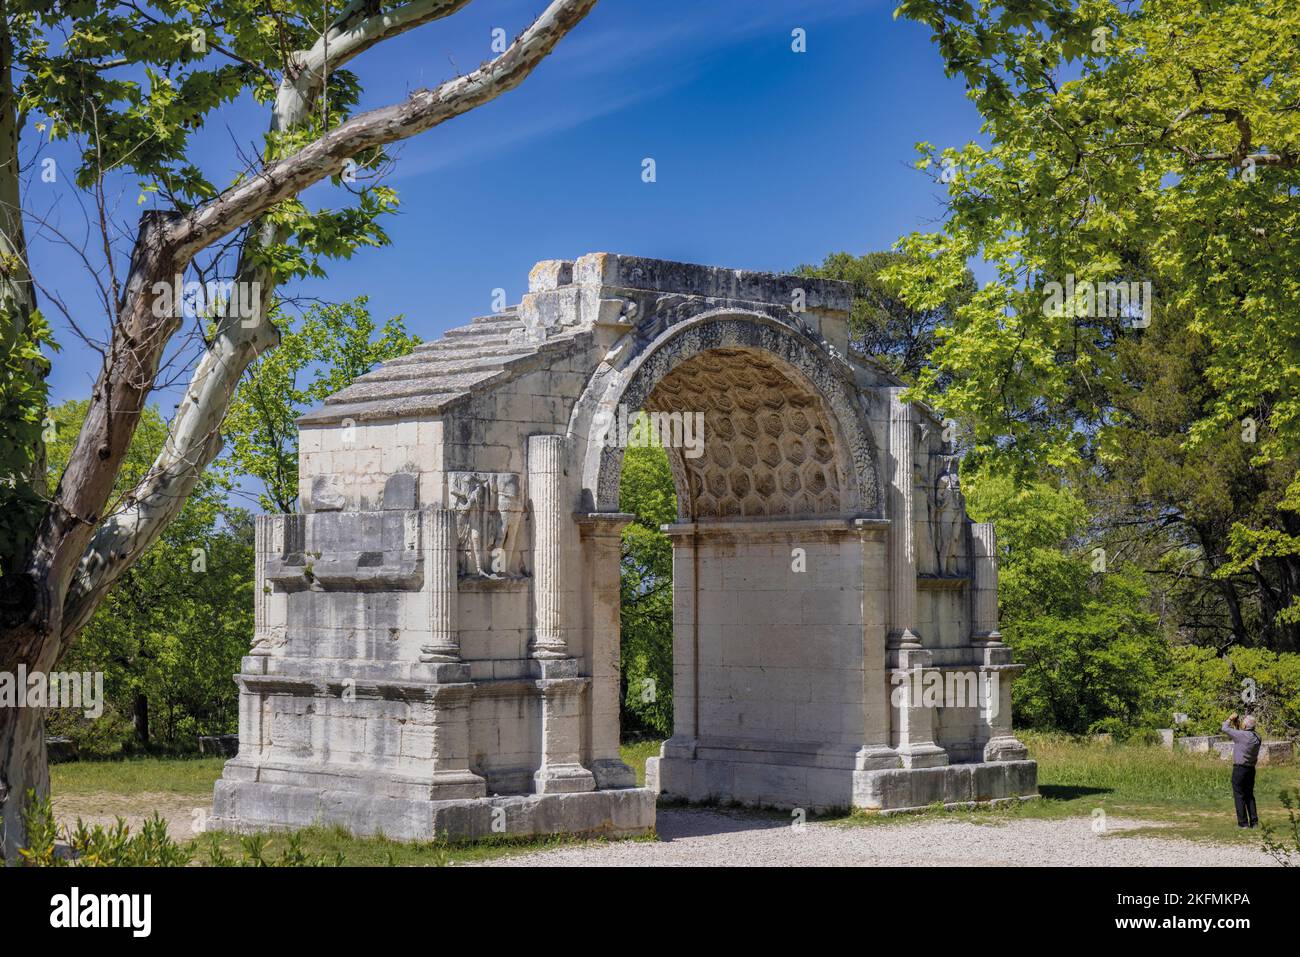 Saint-Rémy-de-Provence, Bouches-du-Rhône, Provenza, Francia. El Arco Municipal, un arco triunfal que fue la entrada a la ciudad romana de Glanum. Foto de stock